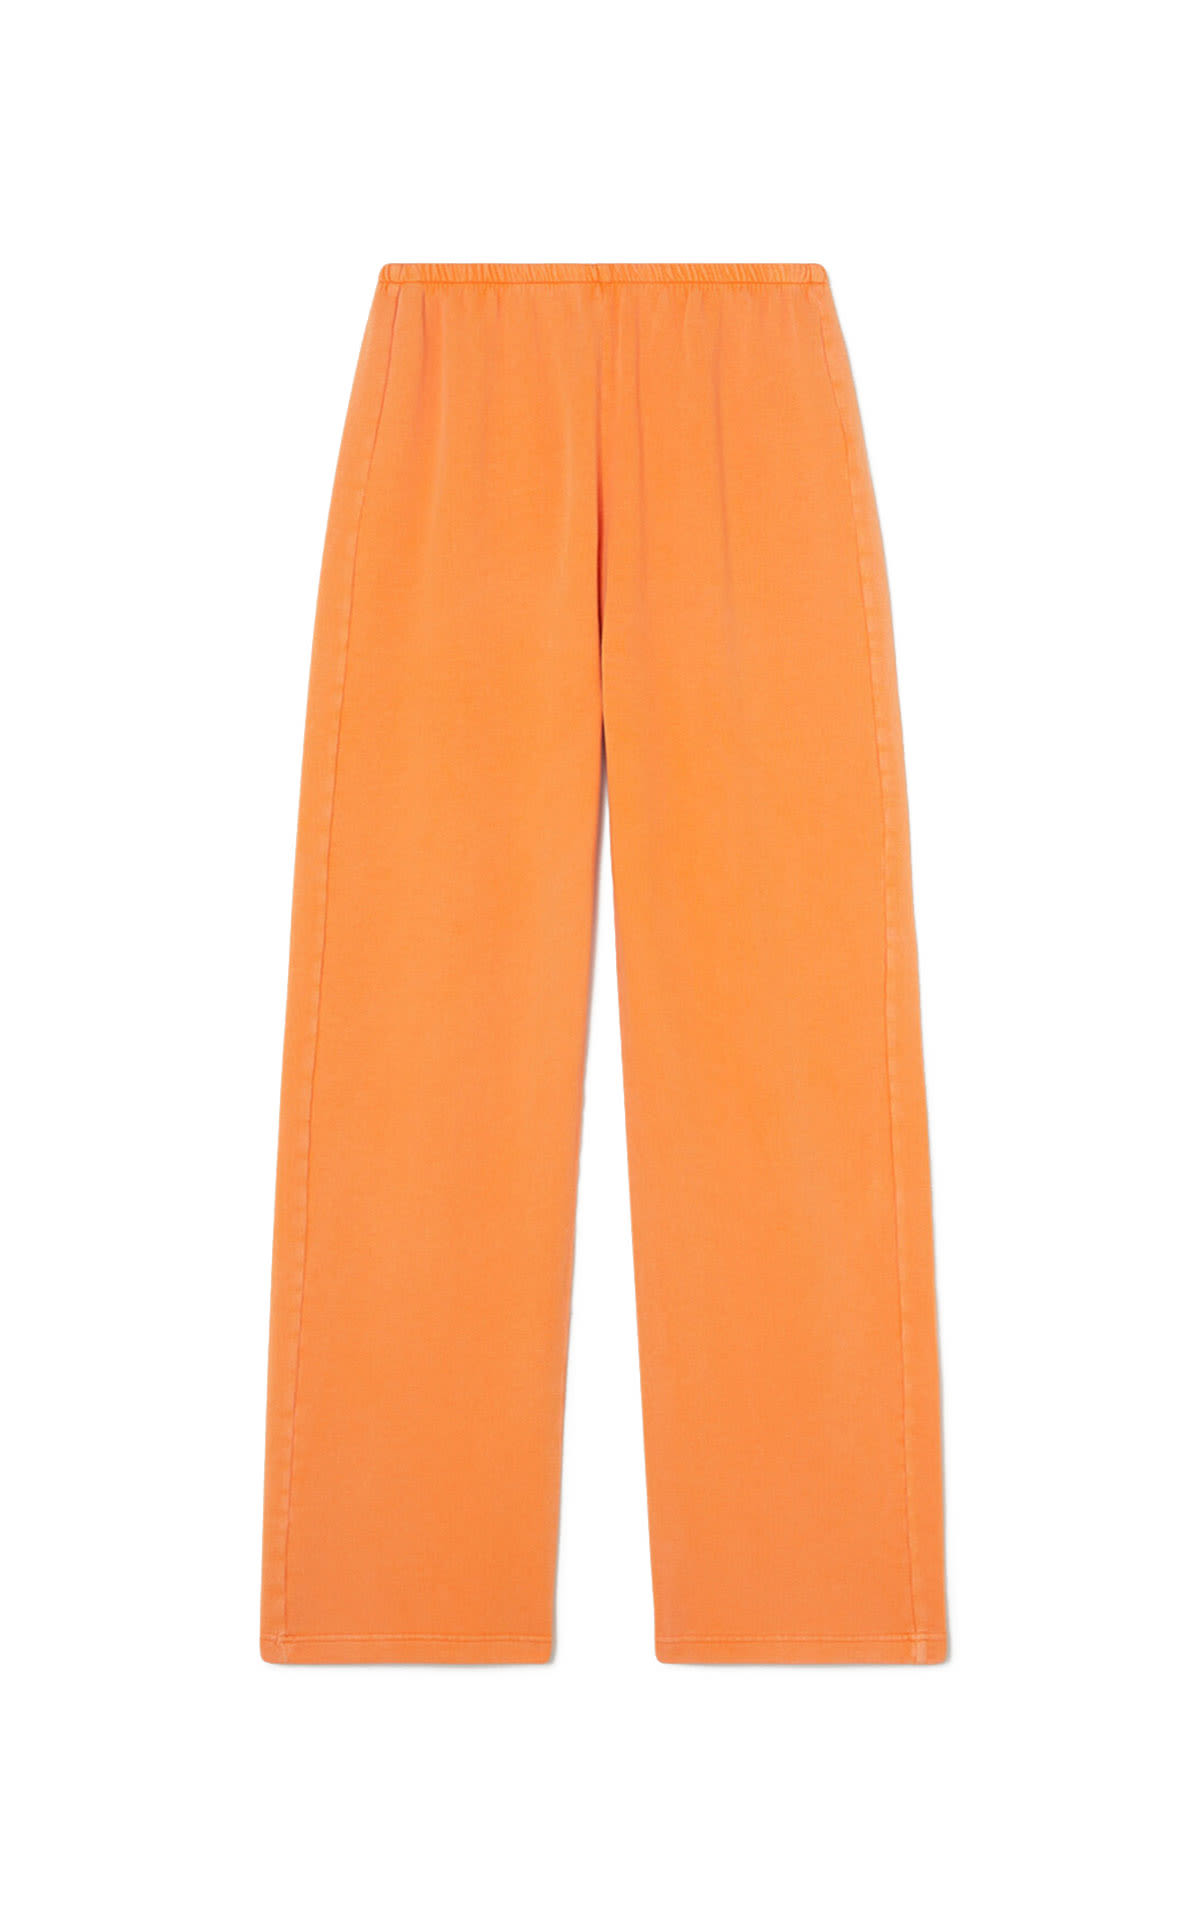 orange flared pants American Vintage